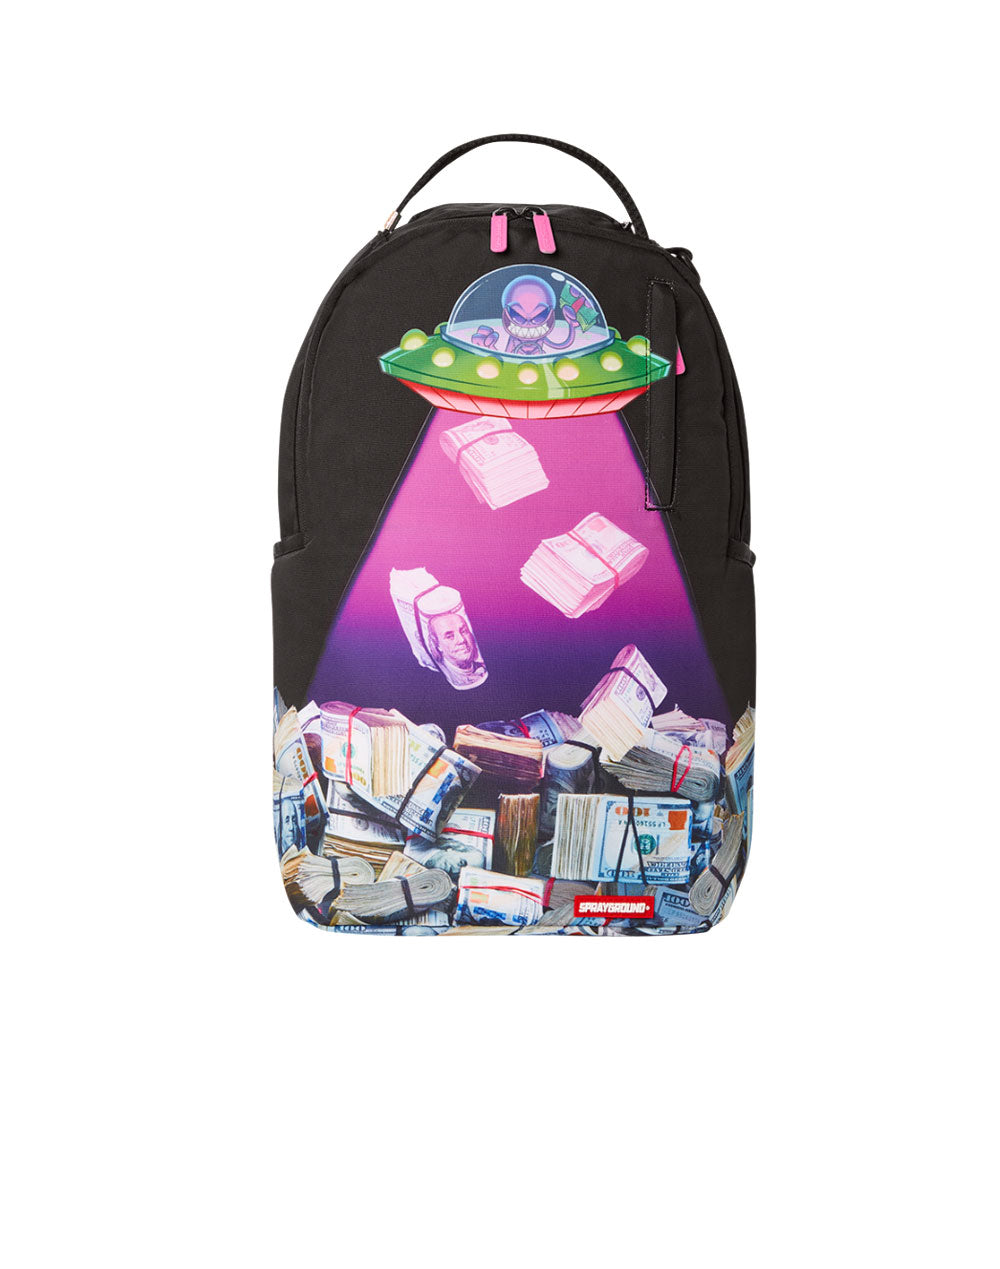 Backpacks | Designer Bags, Luggage & More | Backpacks, Cool school bags,  Bags